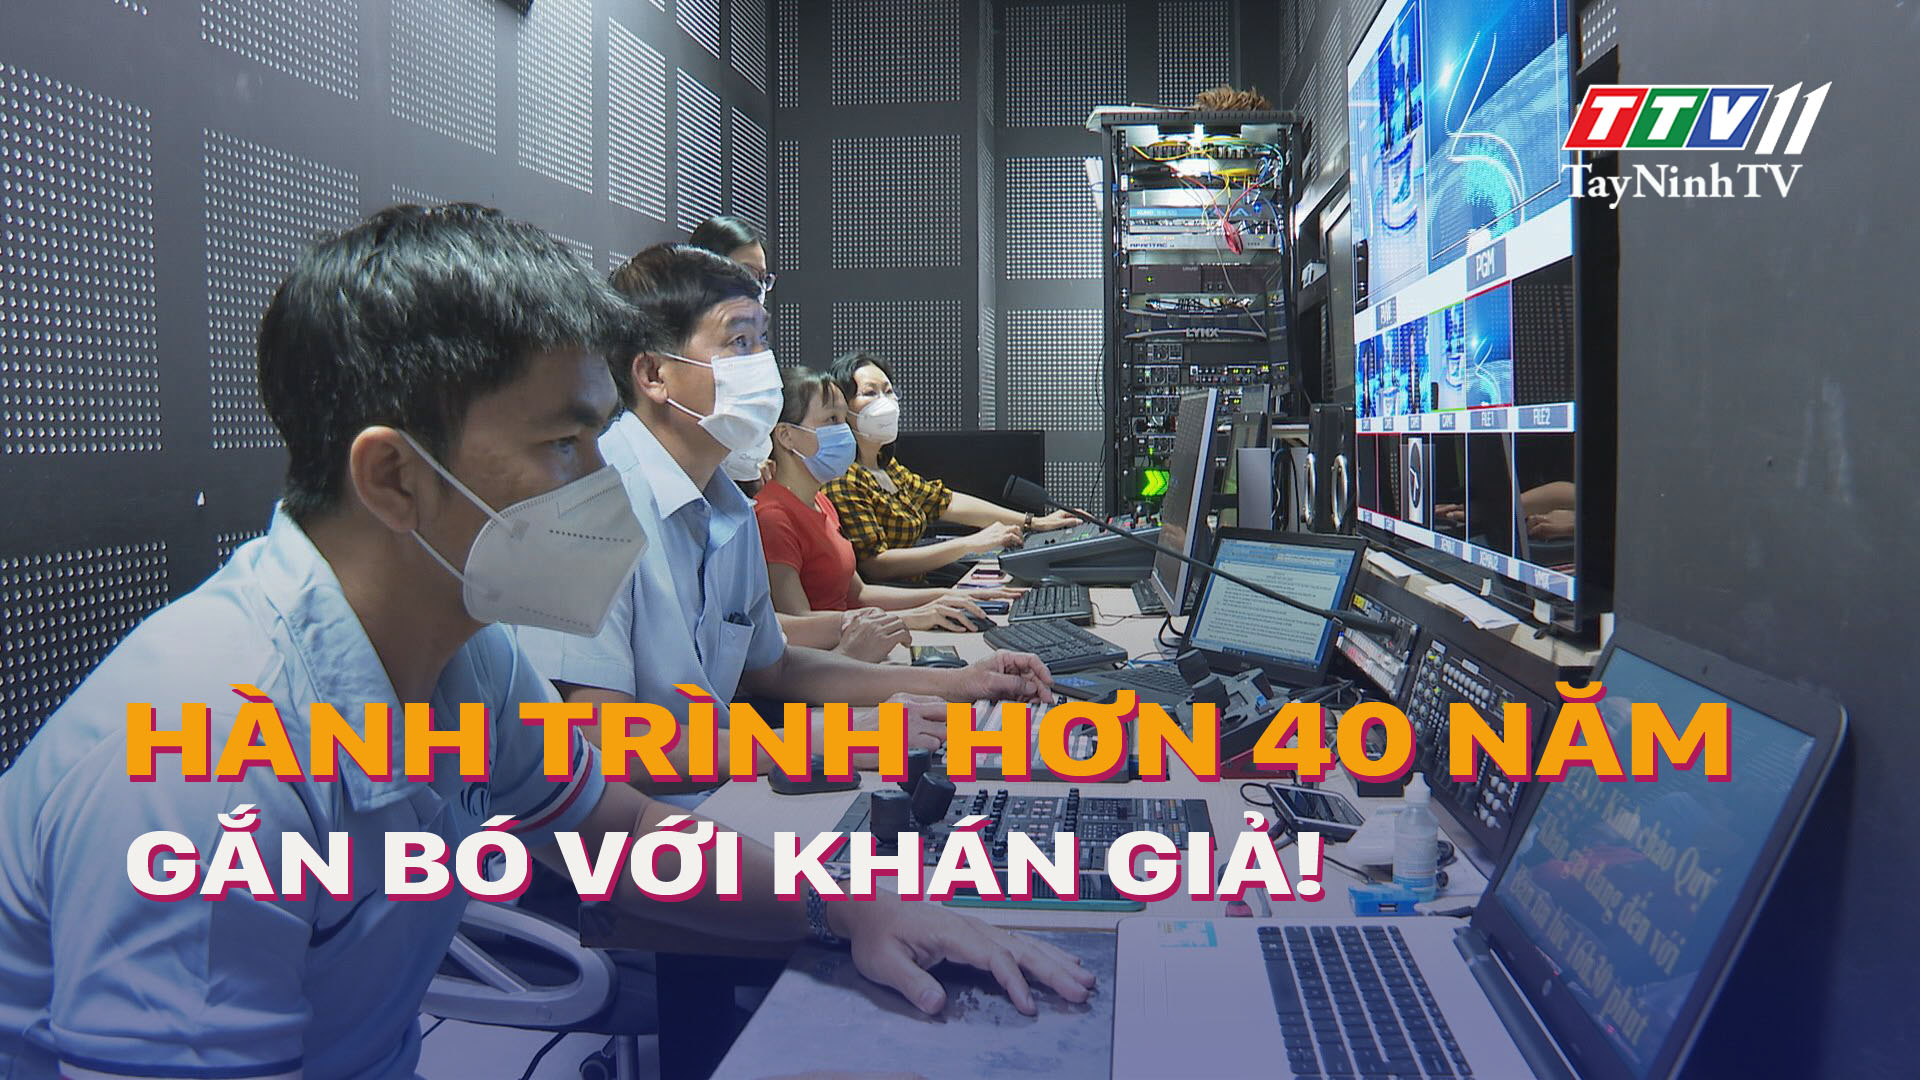 TTV11 - Hành trình hơn 40 năm gắn bó với khán giả! | TayNinhTV